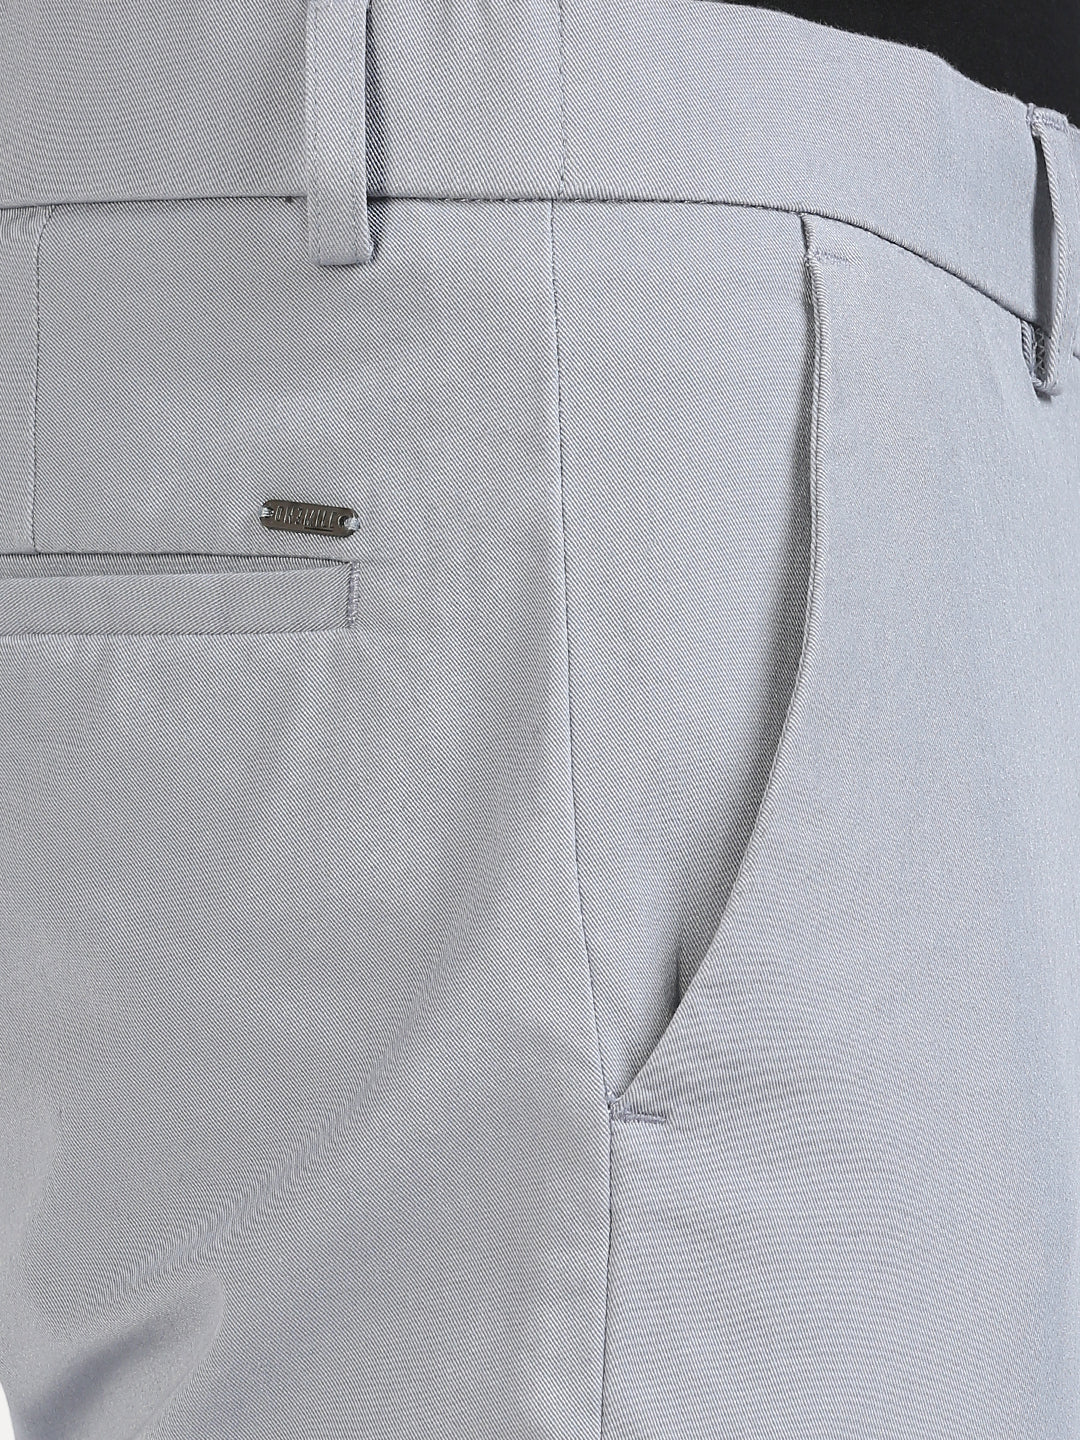 Cotton Tech Grey Zest Trouser